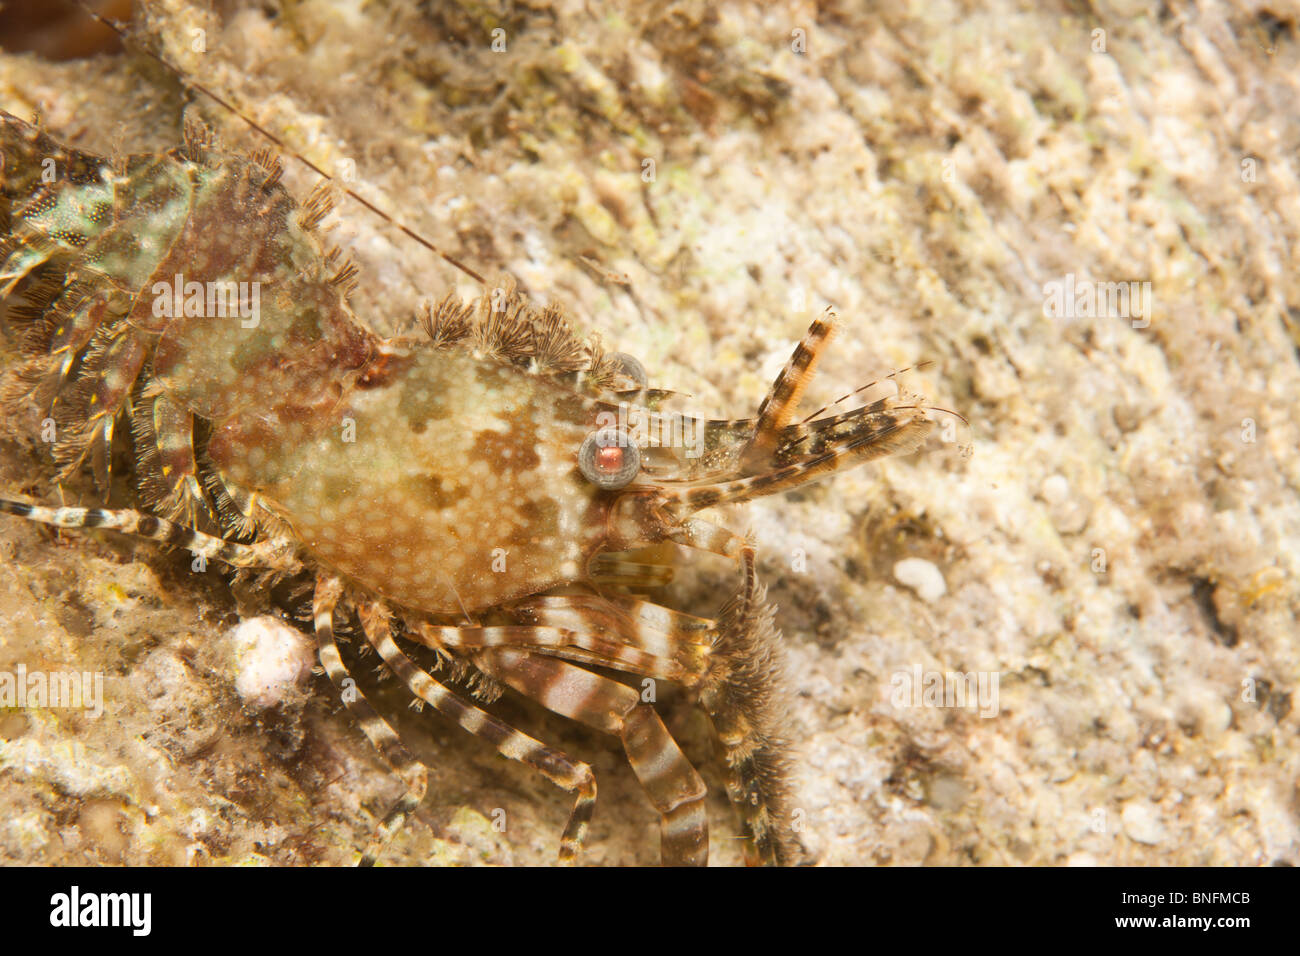 Shrimp (Saron marmoratus), Hippolytidae (Hump-backed) family Stock Photo